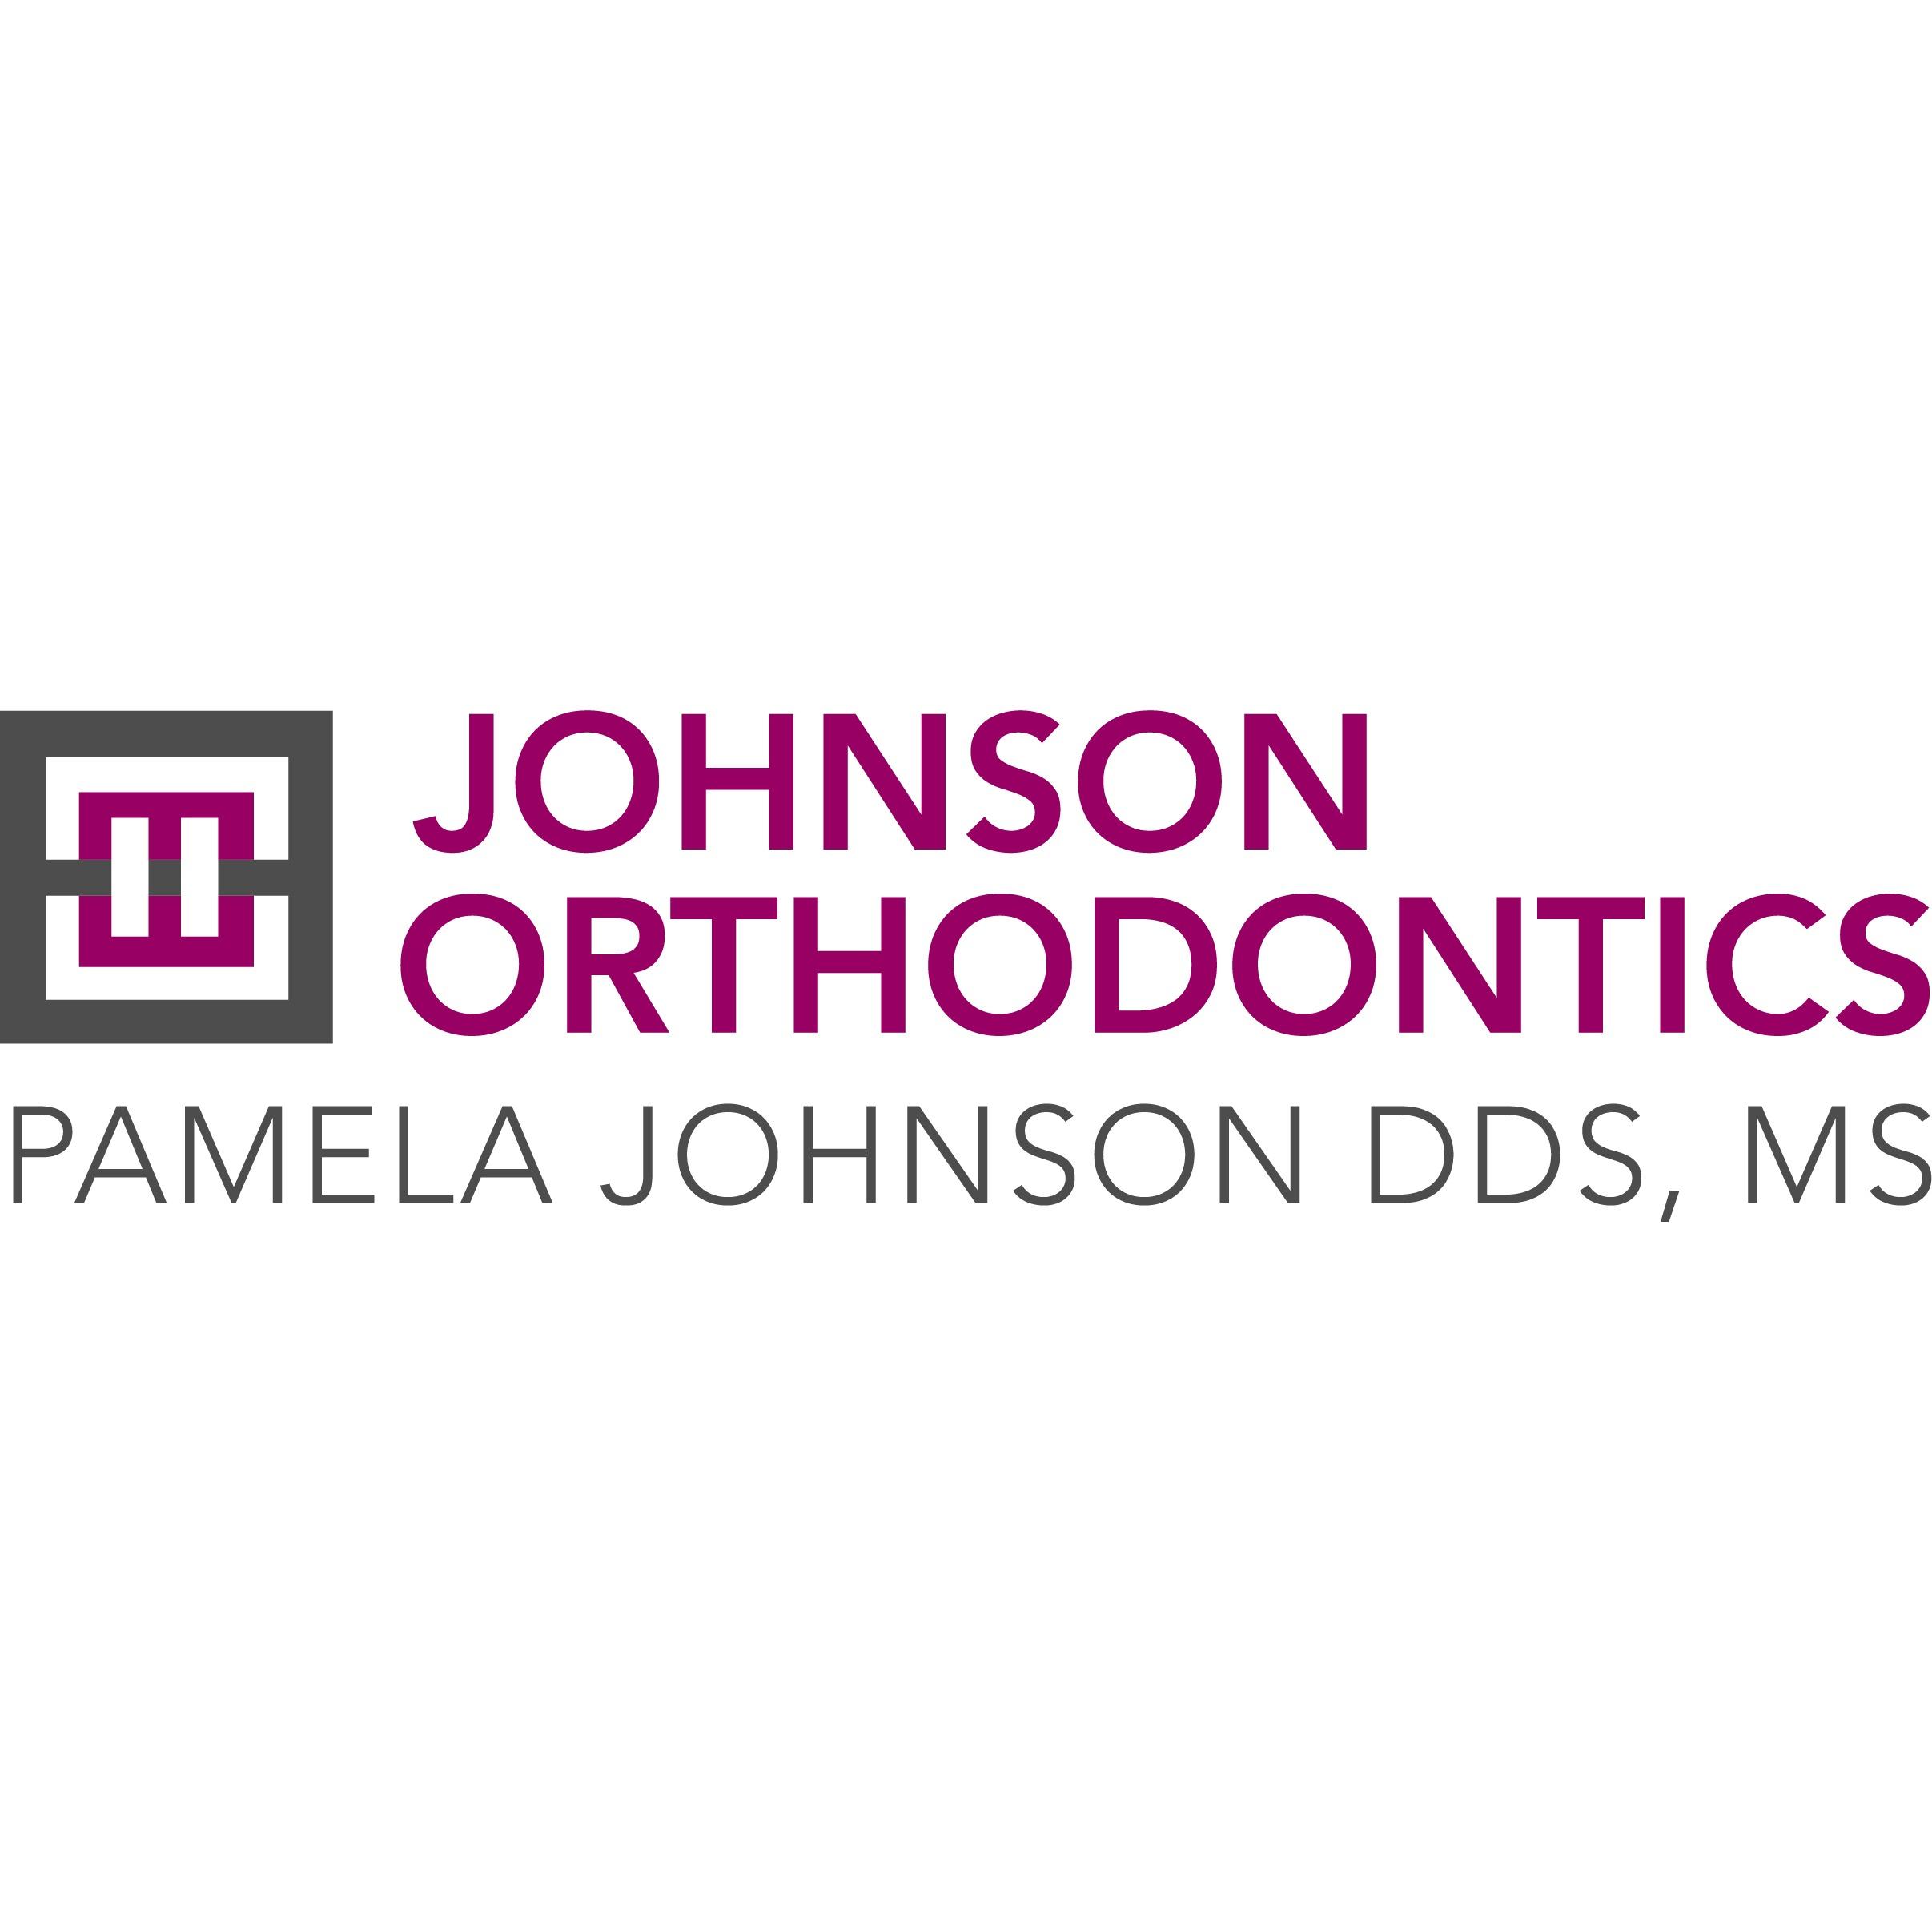 Pamela Johnson DDS, MS - Johnson Orthodontics Logo